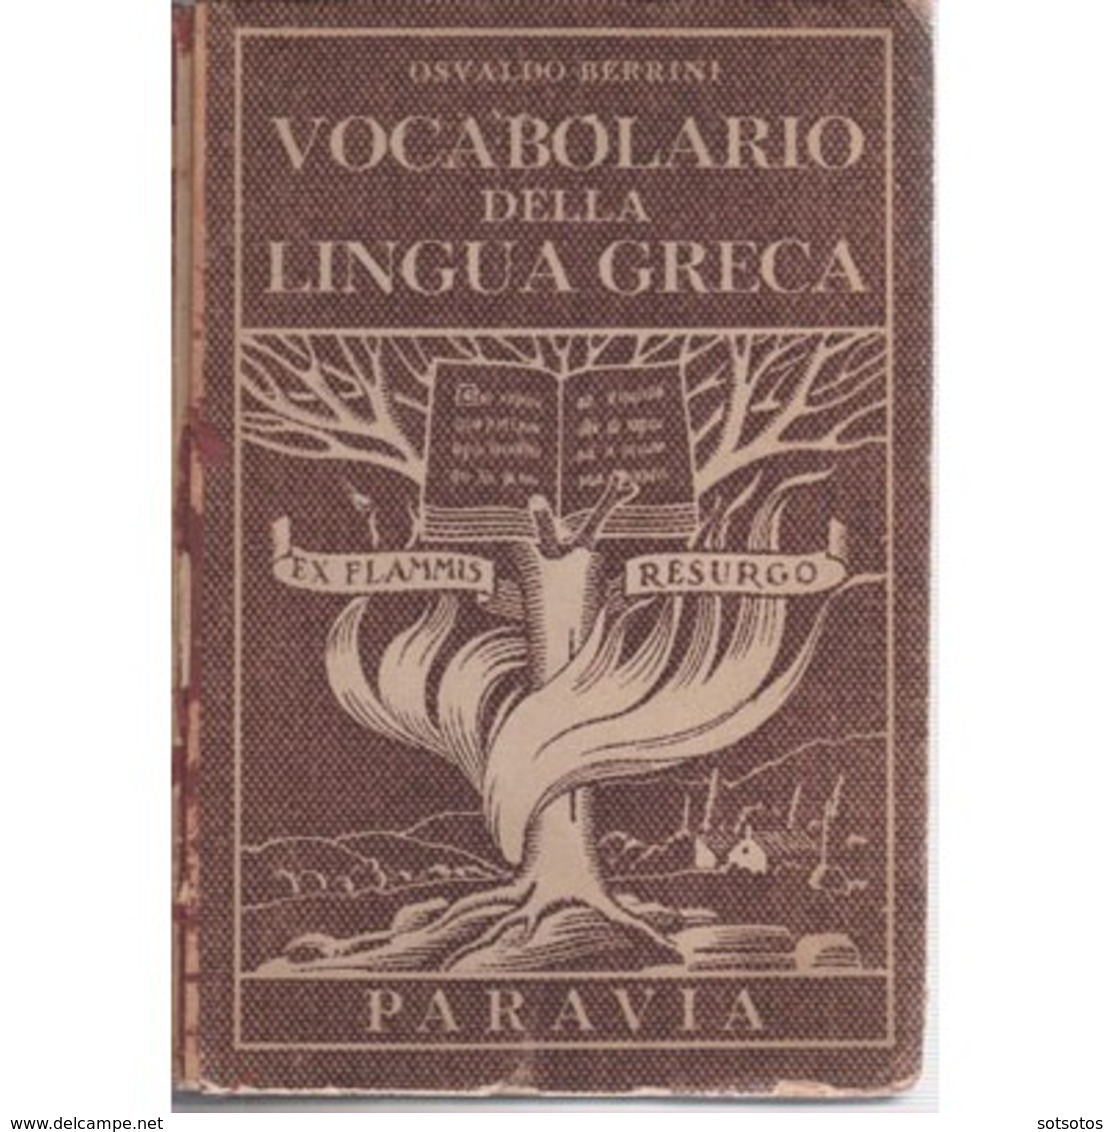 VOCABOLARIO Della LINGUA GRECA: Osvaldo BERRINI Ed. PARAVIA , 1943 - Livres Anciens